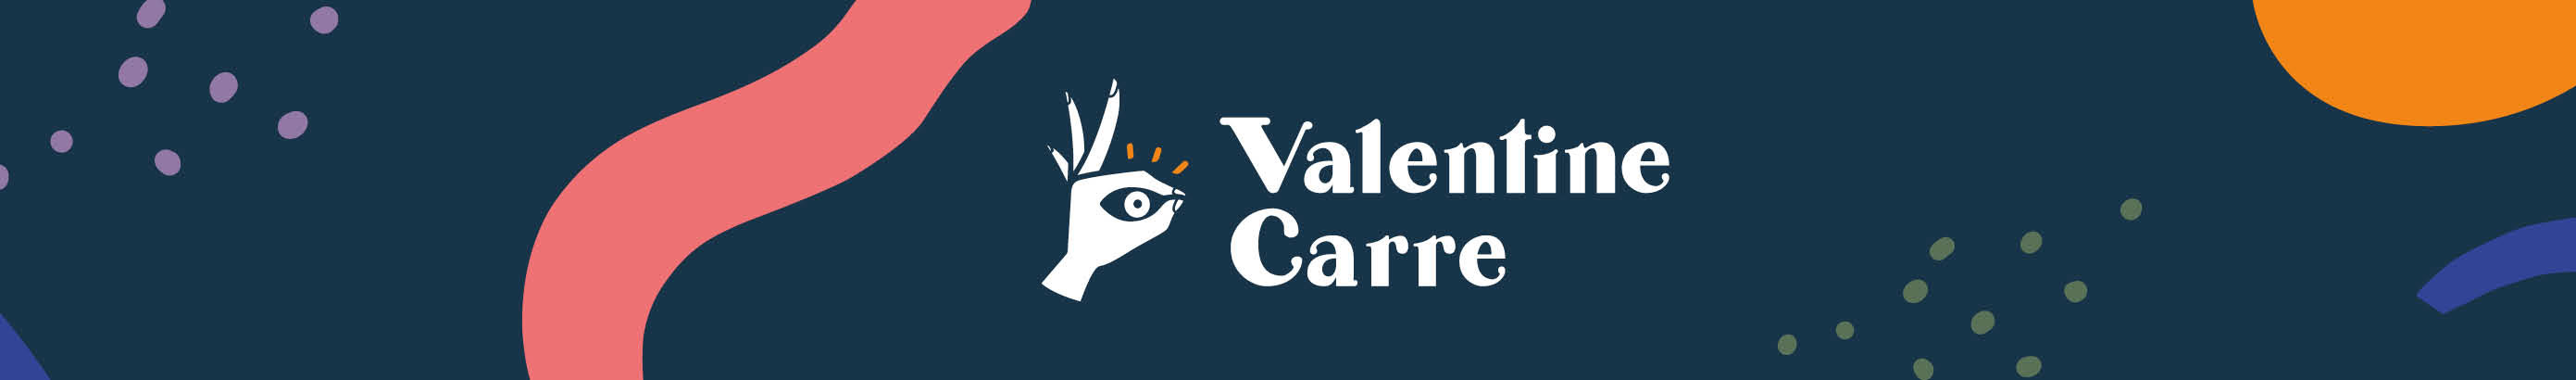 ✳ Valentine ✳ Carre ✳'s profile banner